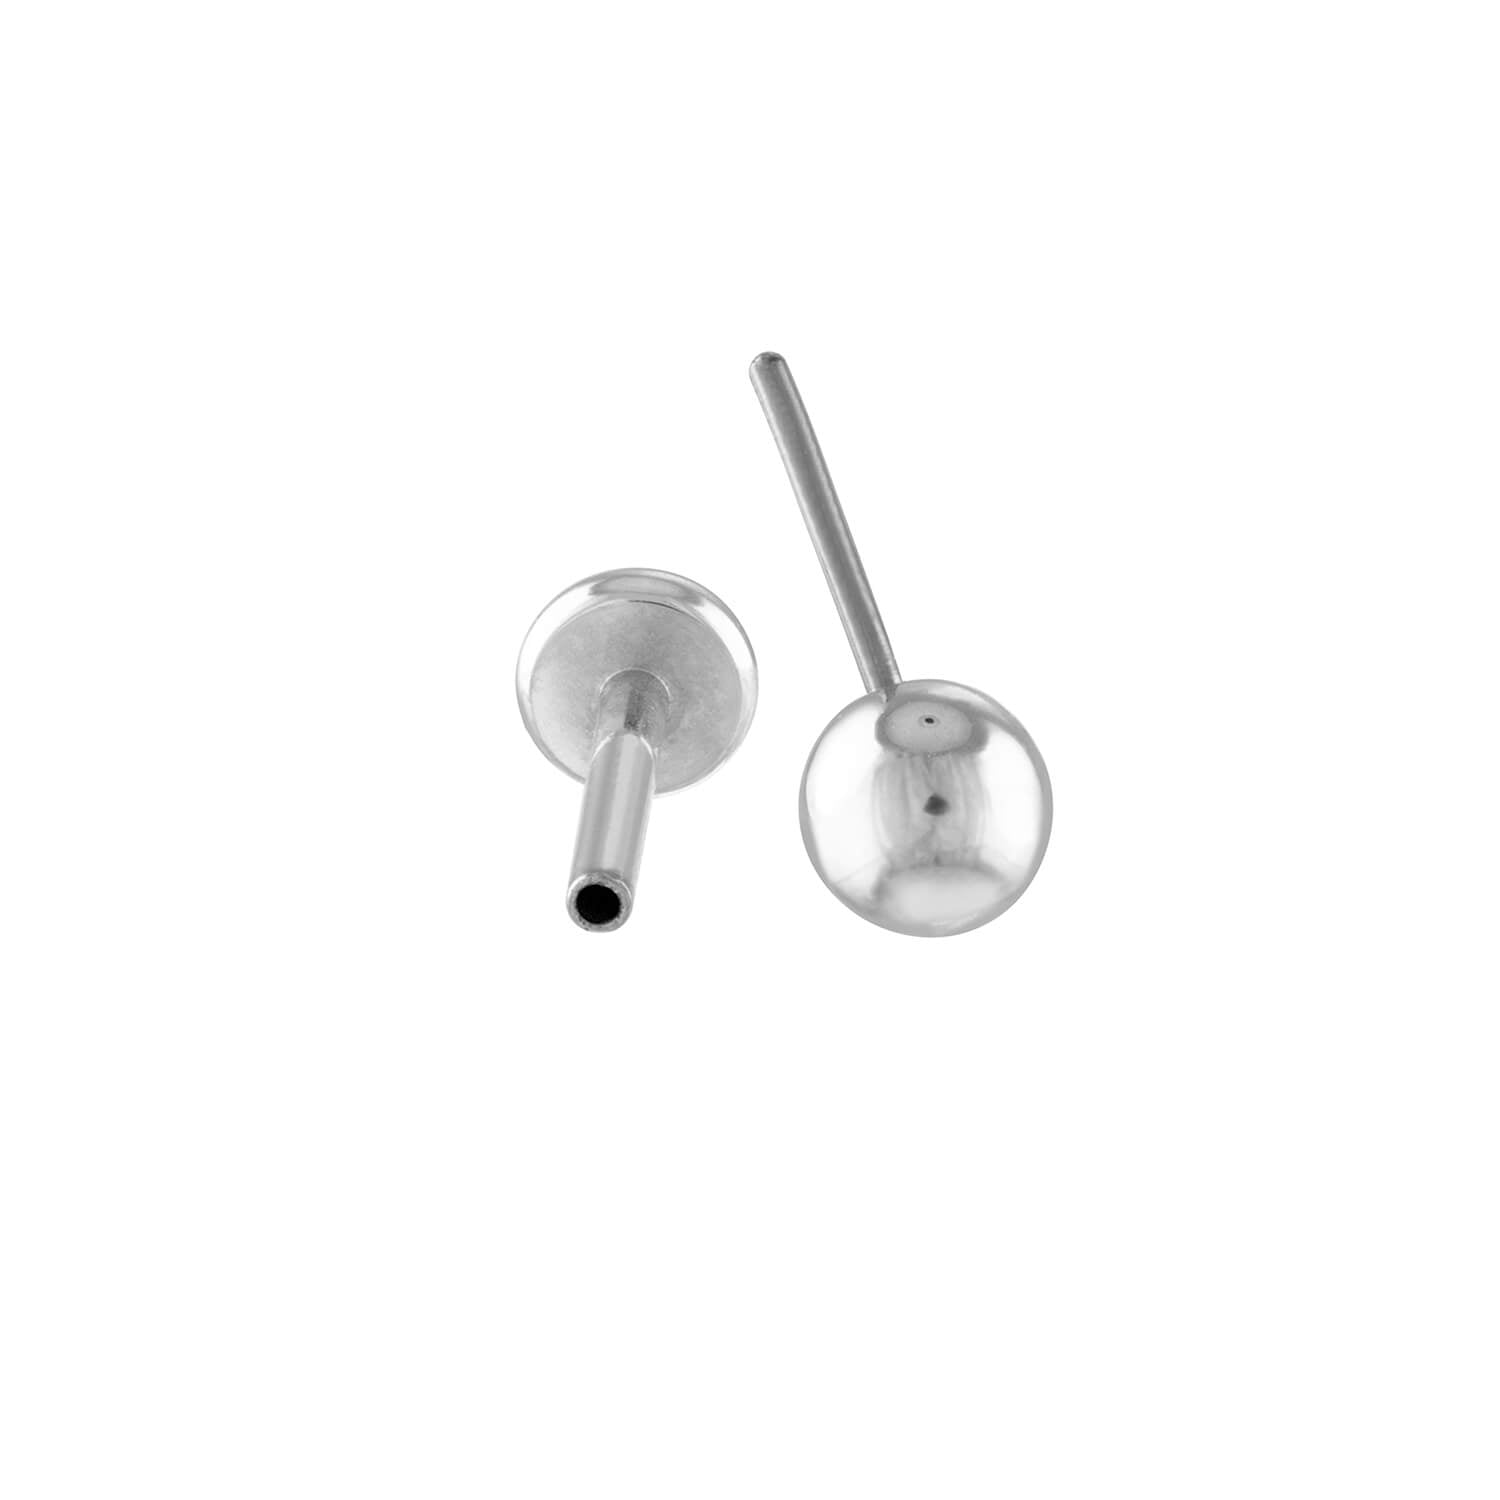 Little Sphere Push Pin Flat Back Earring in Silver